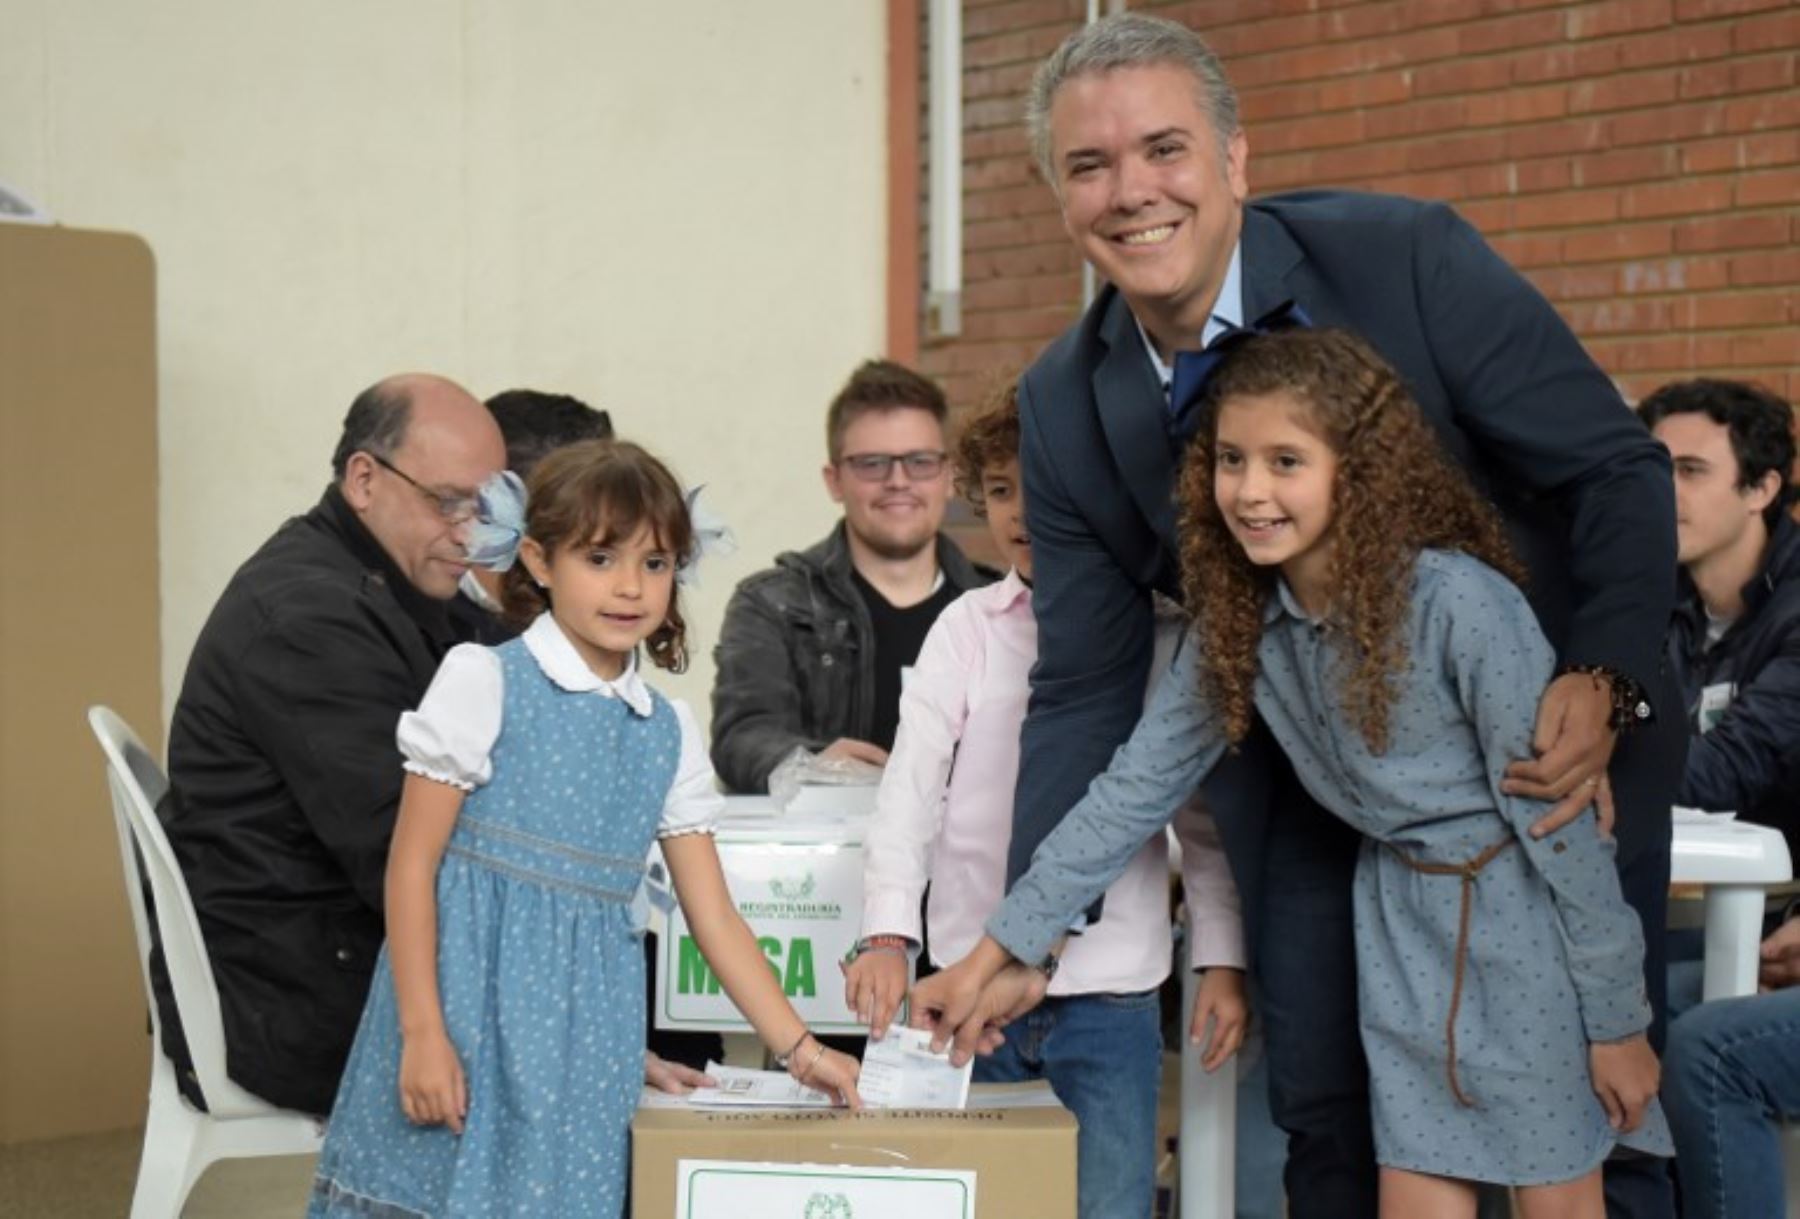 El candidato presidencial colombiano para el Partido Centro Democrático de Colombia, Iván Duque, lanza su voto acompañado por sus hijos, durante la segunda vuelta electoral.Foto:AFP